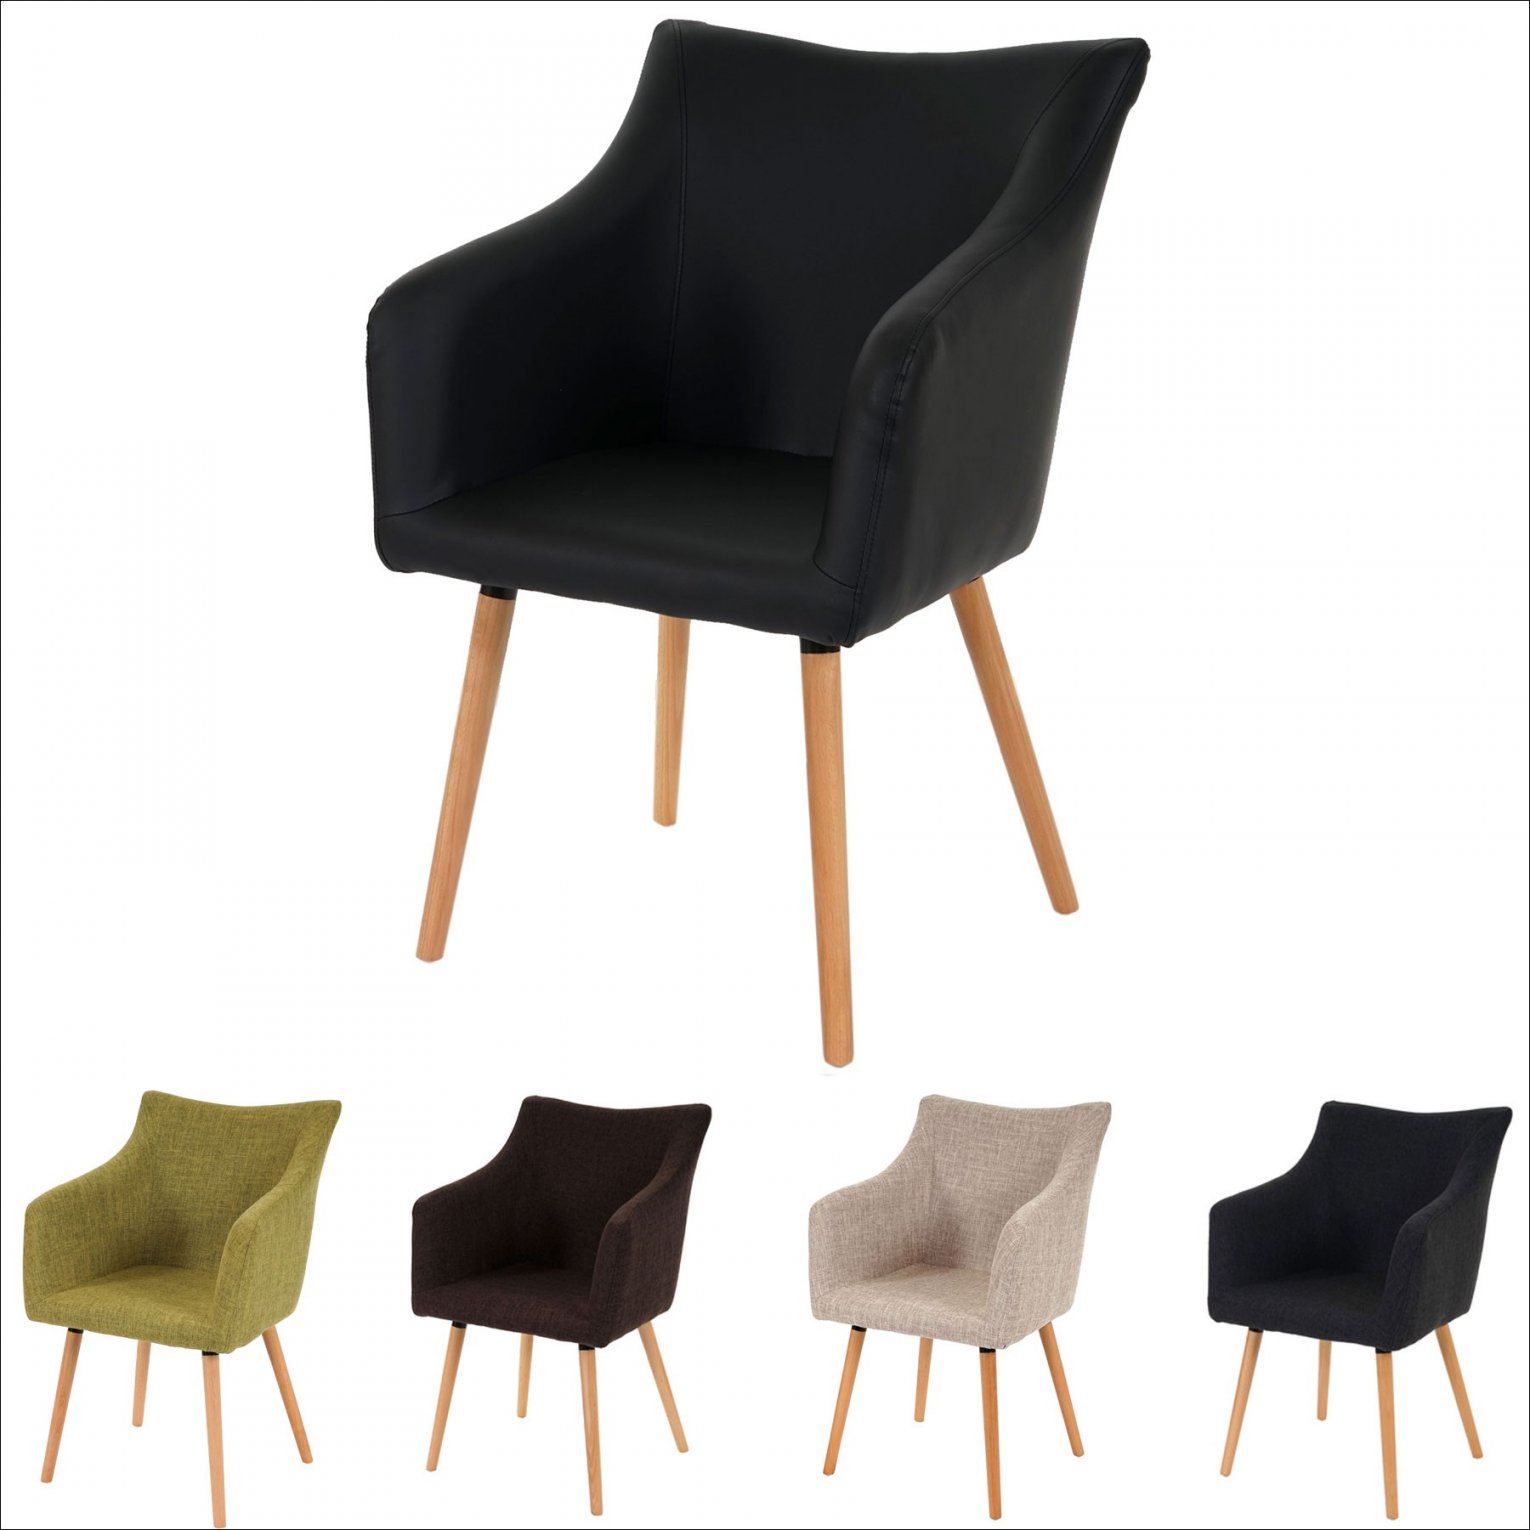 S Stuhl Sitzhöhe 60 Cm Perfekt Gaming Stuhl Test  Möbel Ideen 2018 von Hocker Sitzhöhe 60 Cm Bild